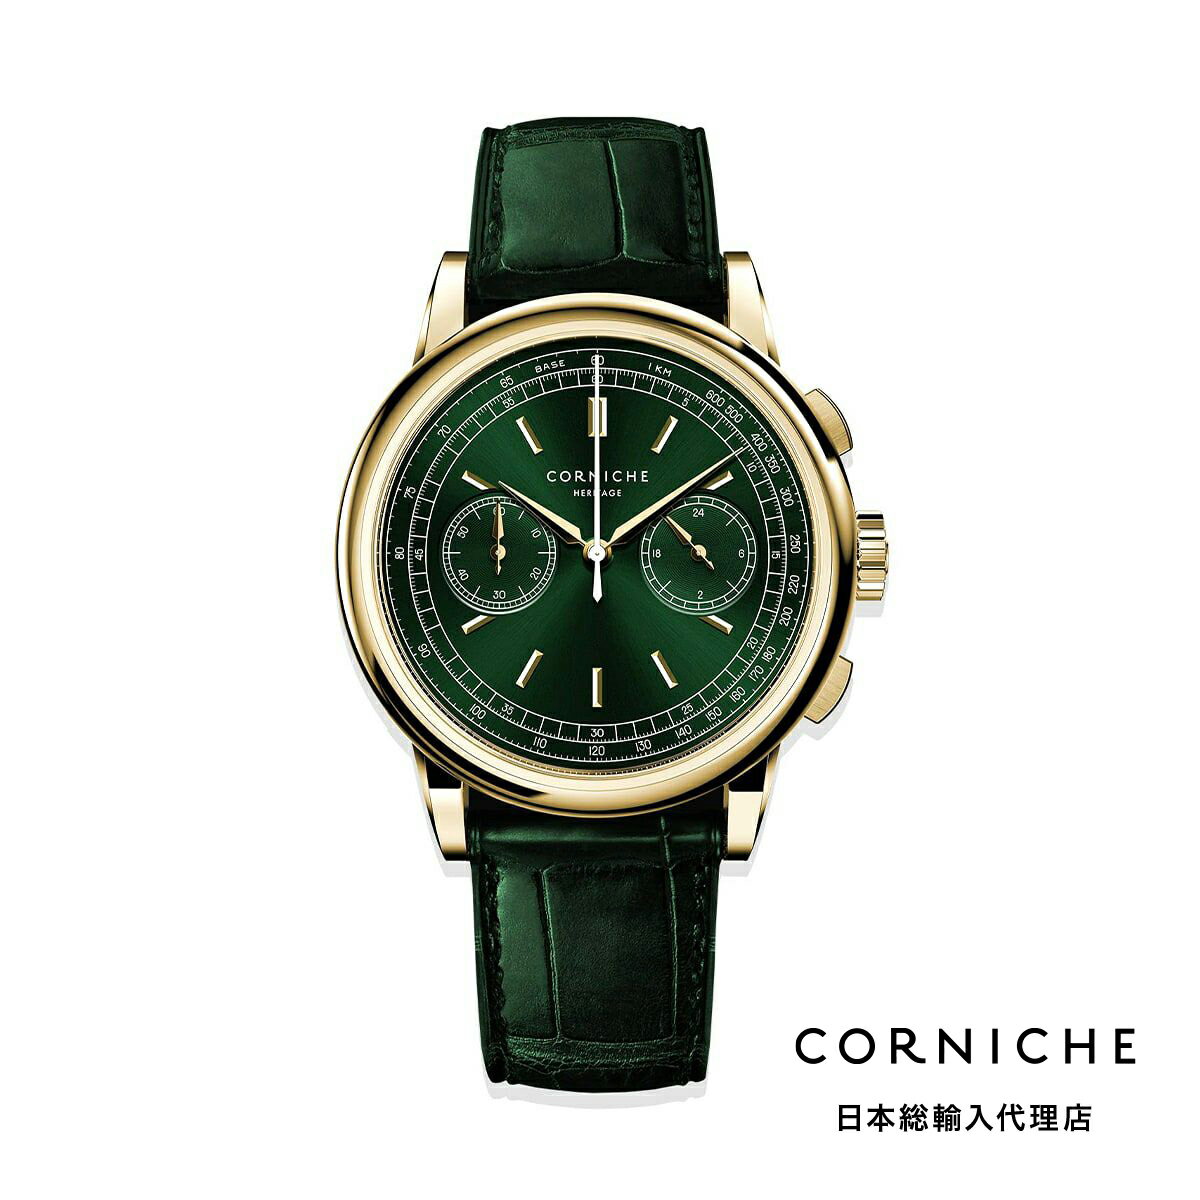 楽天H°M’S” WatchStoreコーニッシュ CORNICHE ヘリテージ クロノグラフ イエローゴールド グリーン ダイヤル ゴールドケース レザーベルト 腕時計 メンズ